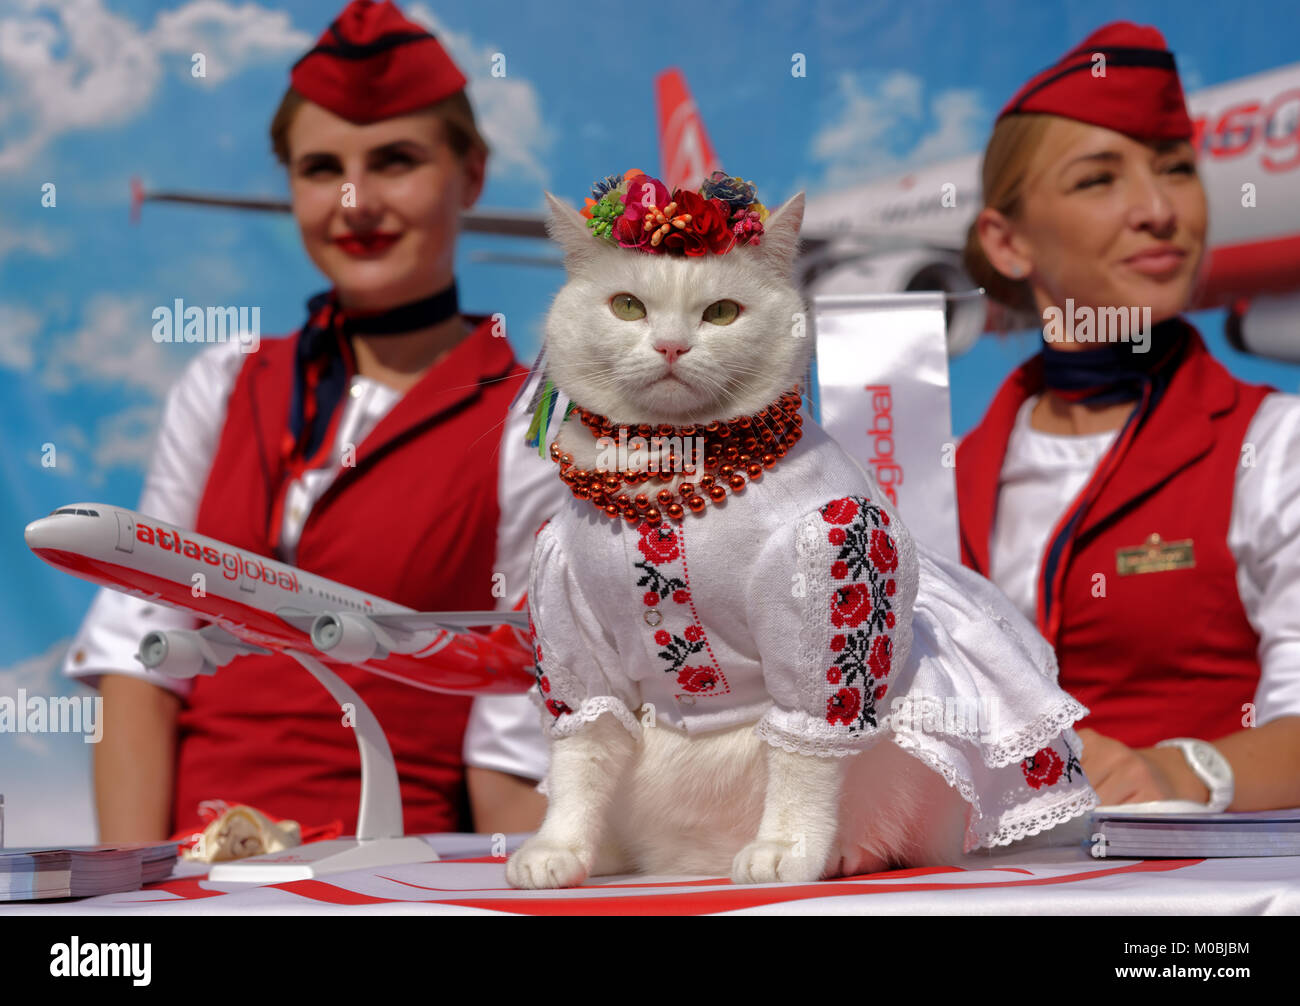 Kiev, Ukraine - 1 octobre 2016: Chat blanc habillé en costume national ukrainien et headaddress de fleur en promotion de la compagnie aérienne turque Atlas Global Banque D'Images